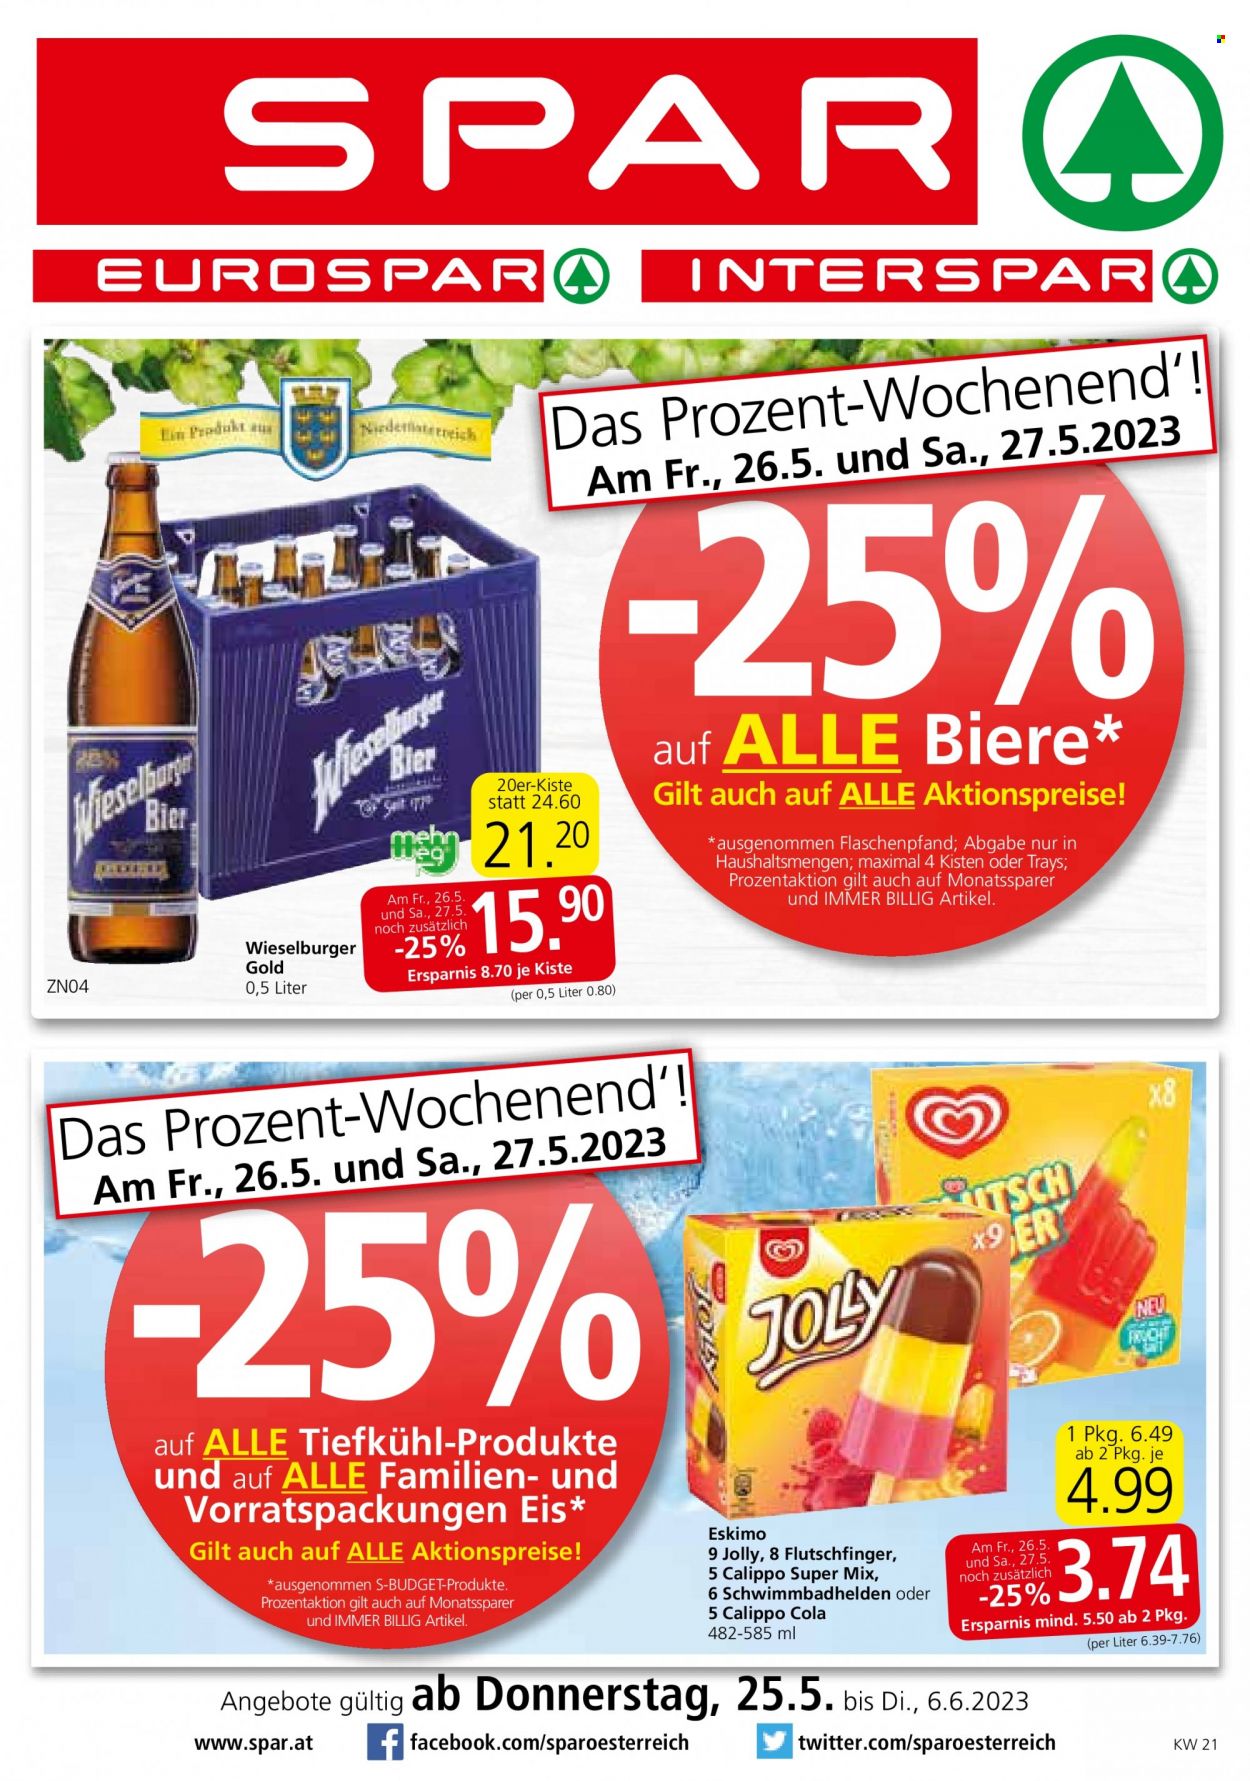 Angebote SPAR - 25.5.2023 - 6.6.2023 - Verkaufsprodukte - S-BUDGET, Eis, Eskimo, Cola, Wieselburger Gold, Alkohol, Bier, Wieselburger. Seite 1.